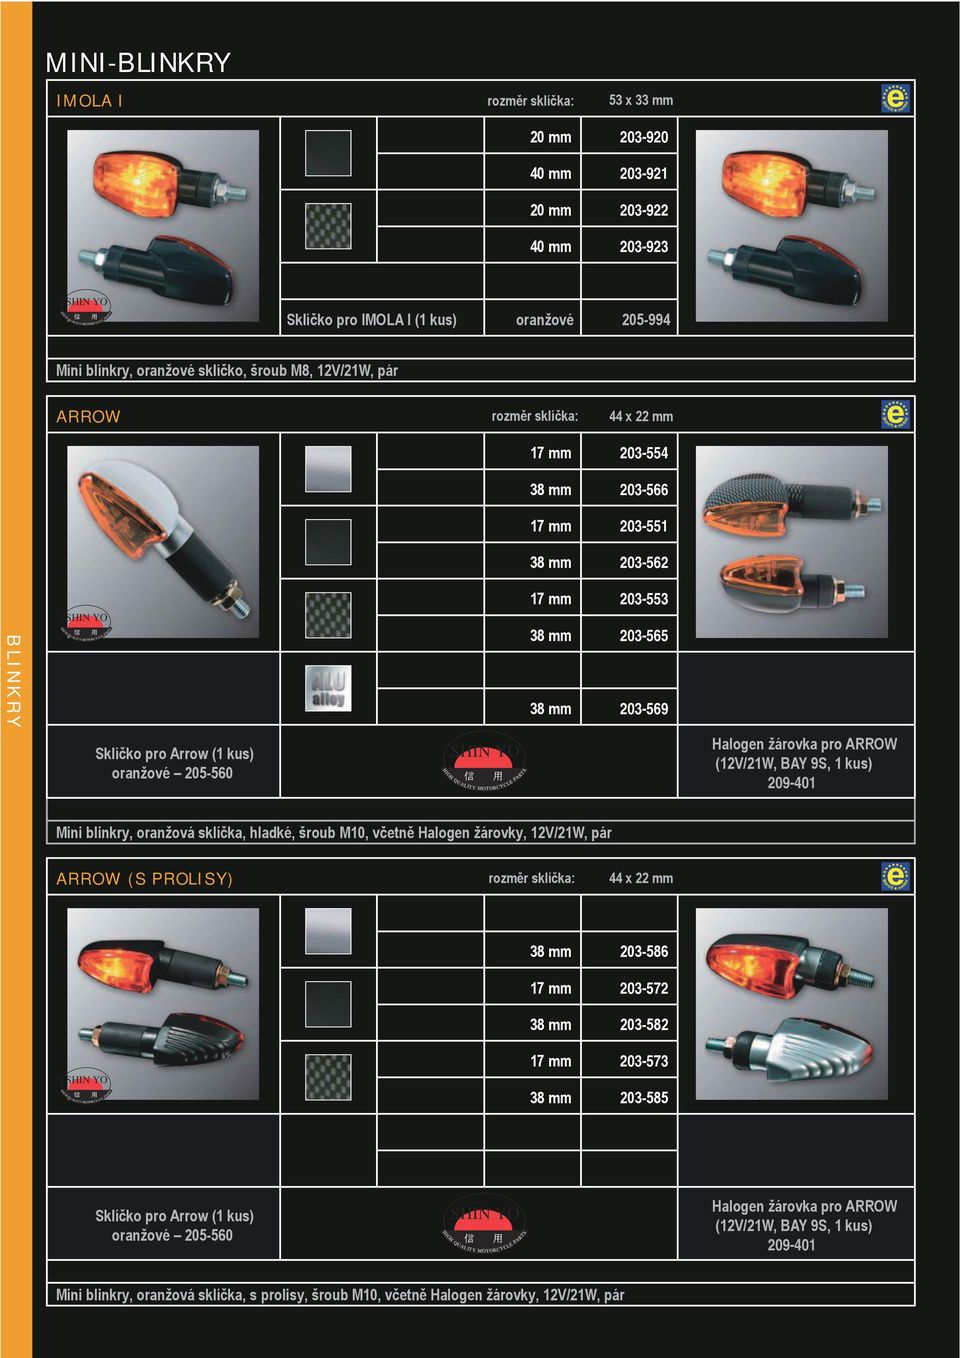 kus) oranžové 205-560 QUALITY MOTORCYCLE Halogen žárovka pro ARROW (12V/21W, BAY 9S, 1 kus) 209-401 Mini blinkry, oranžová sklíčka, hladké, šroub M10, včetně Halogen žárovky, 12V/21W, pár ARROW (S